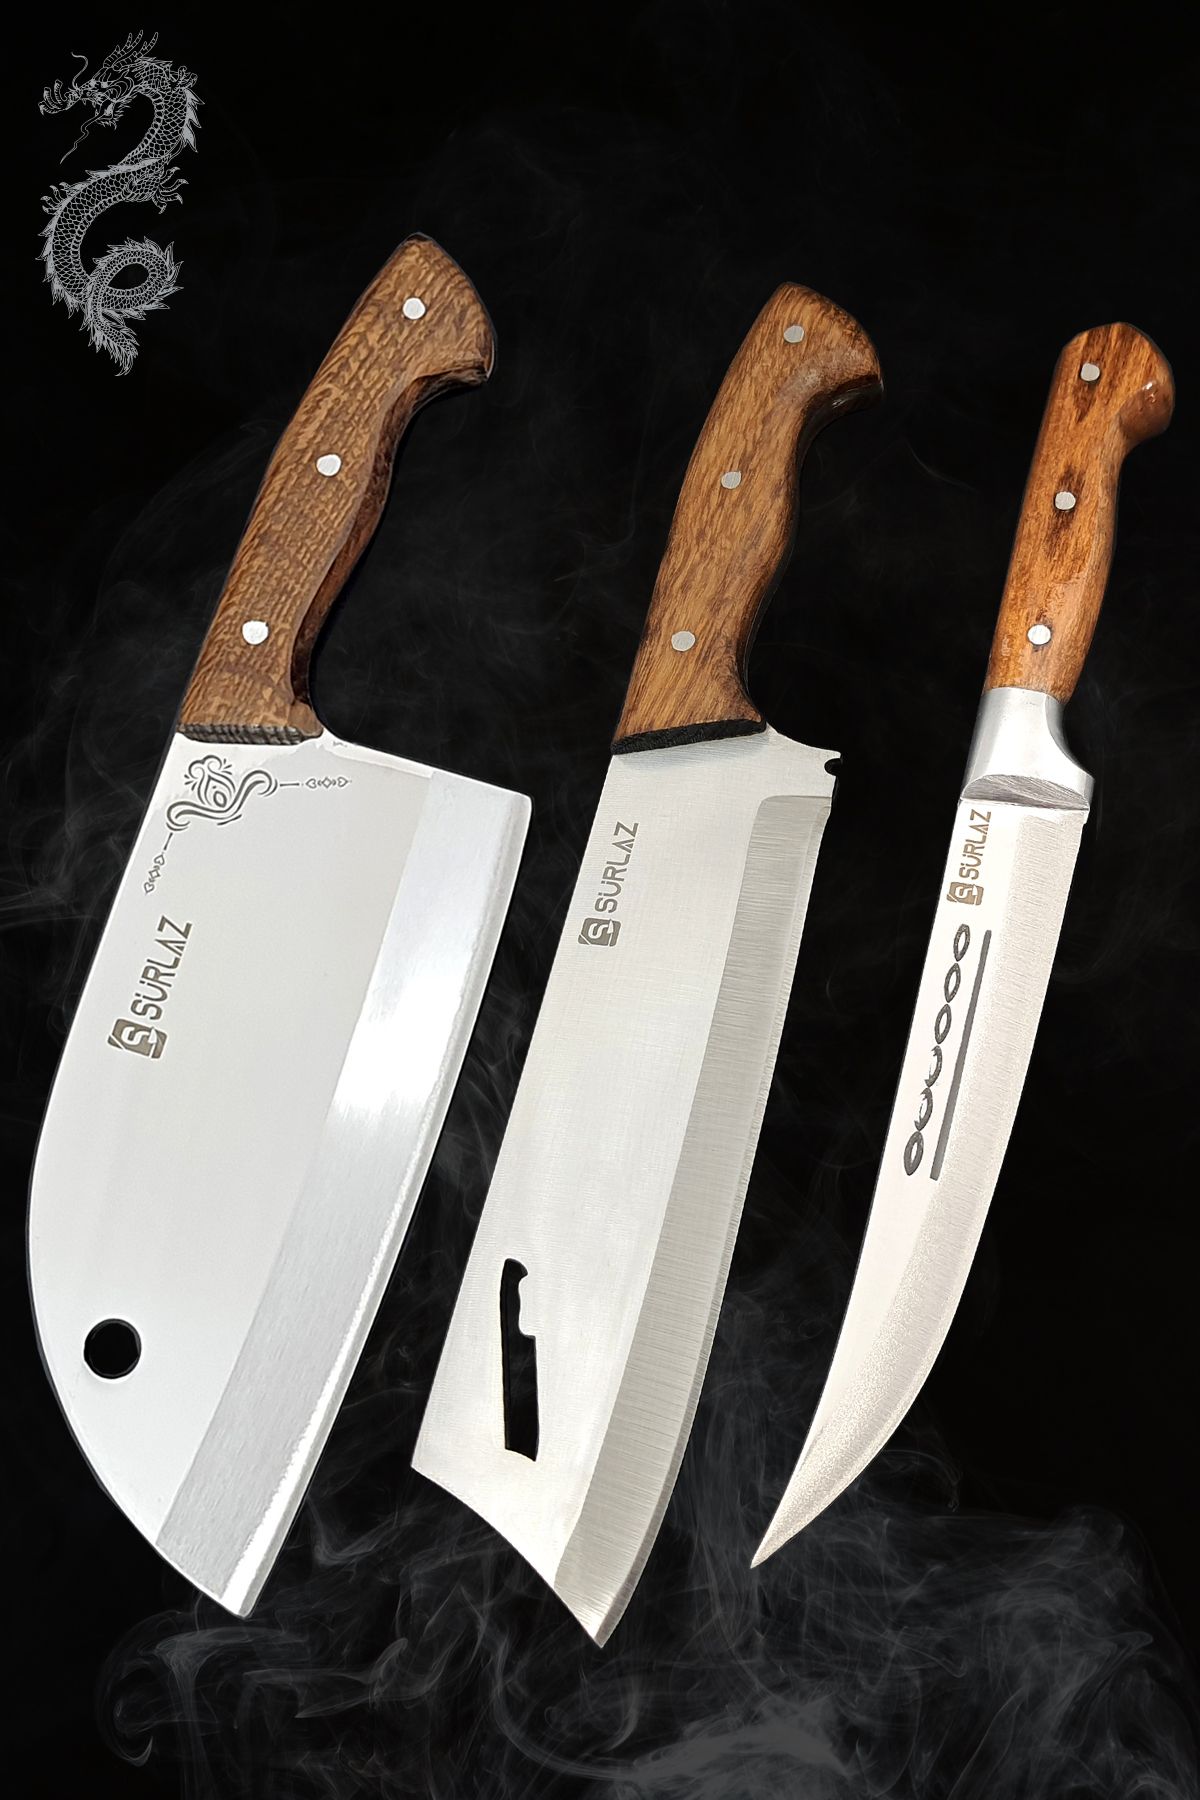 SürLaz Kamp Mutfak Bıçak Seti 3 Parça Outdoor Bıçak Piknik Bıçağı Hediyelik Bıçak Kılıf Hediyeli